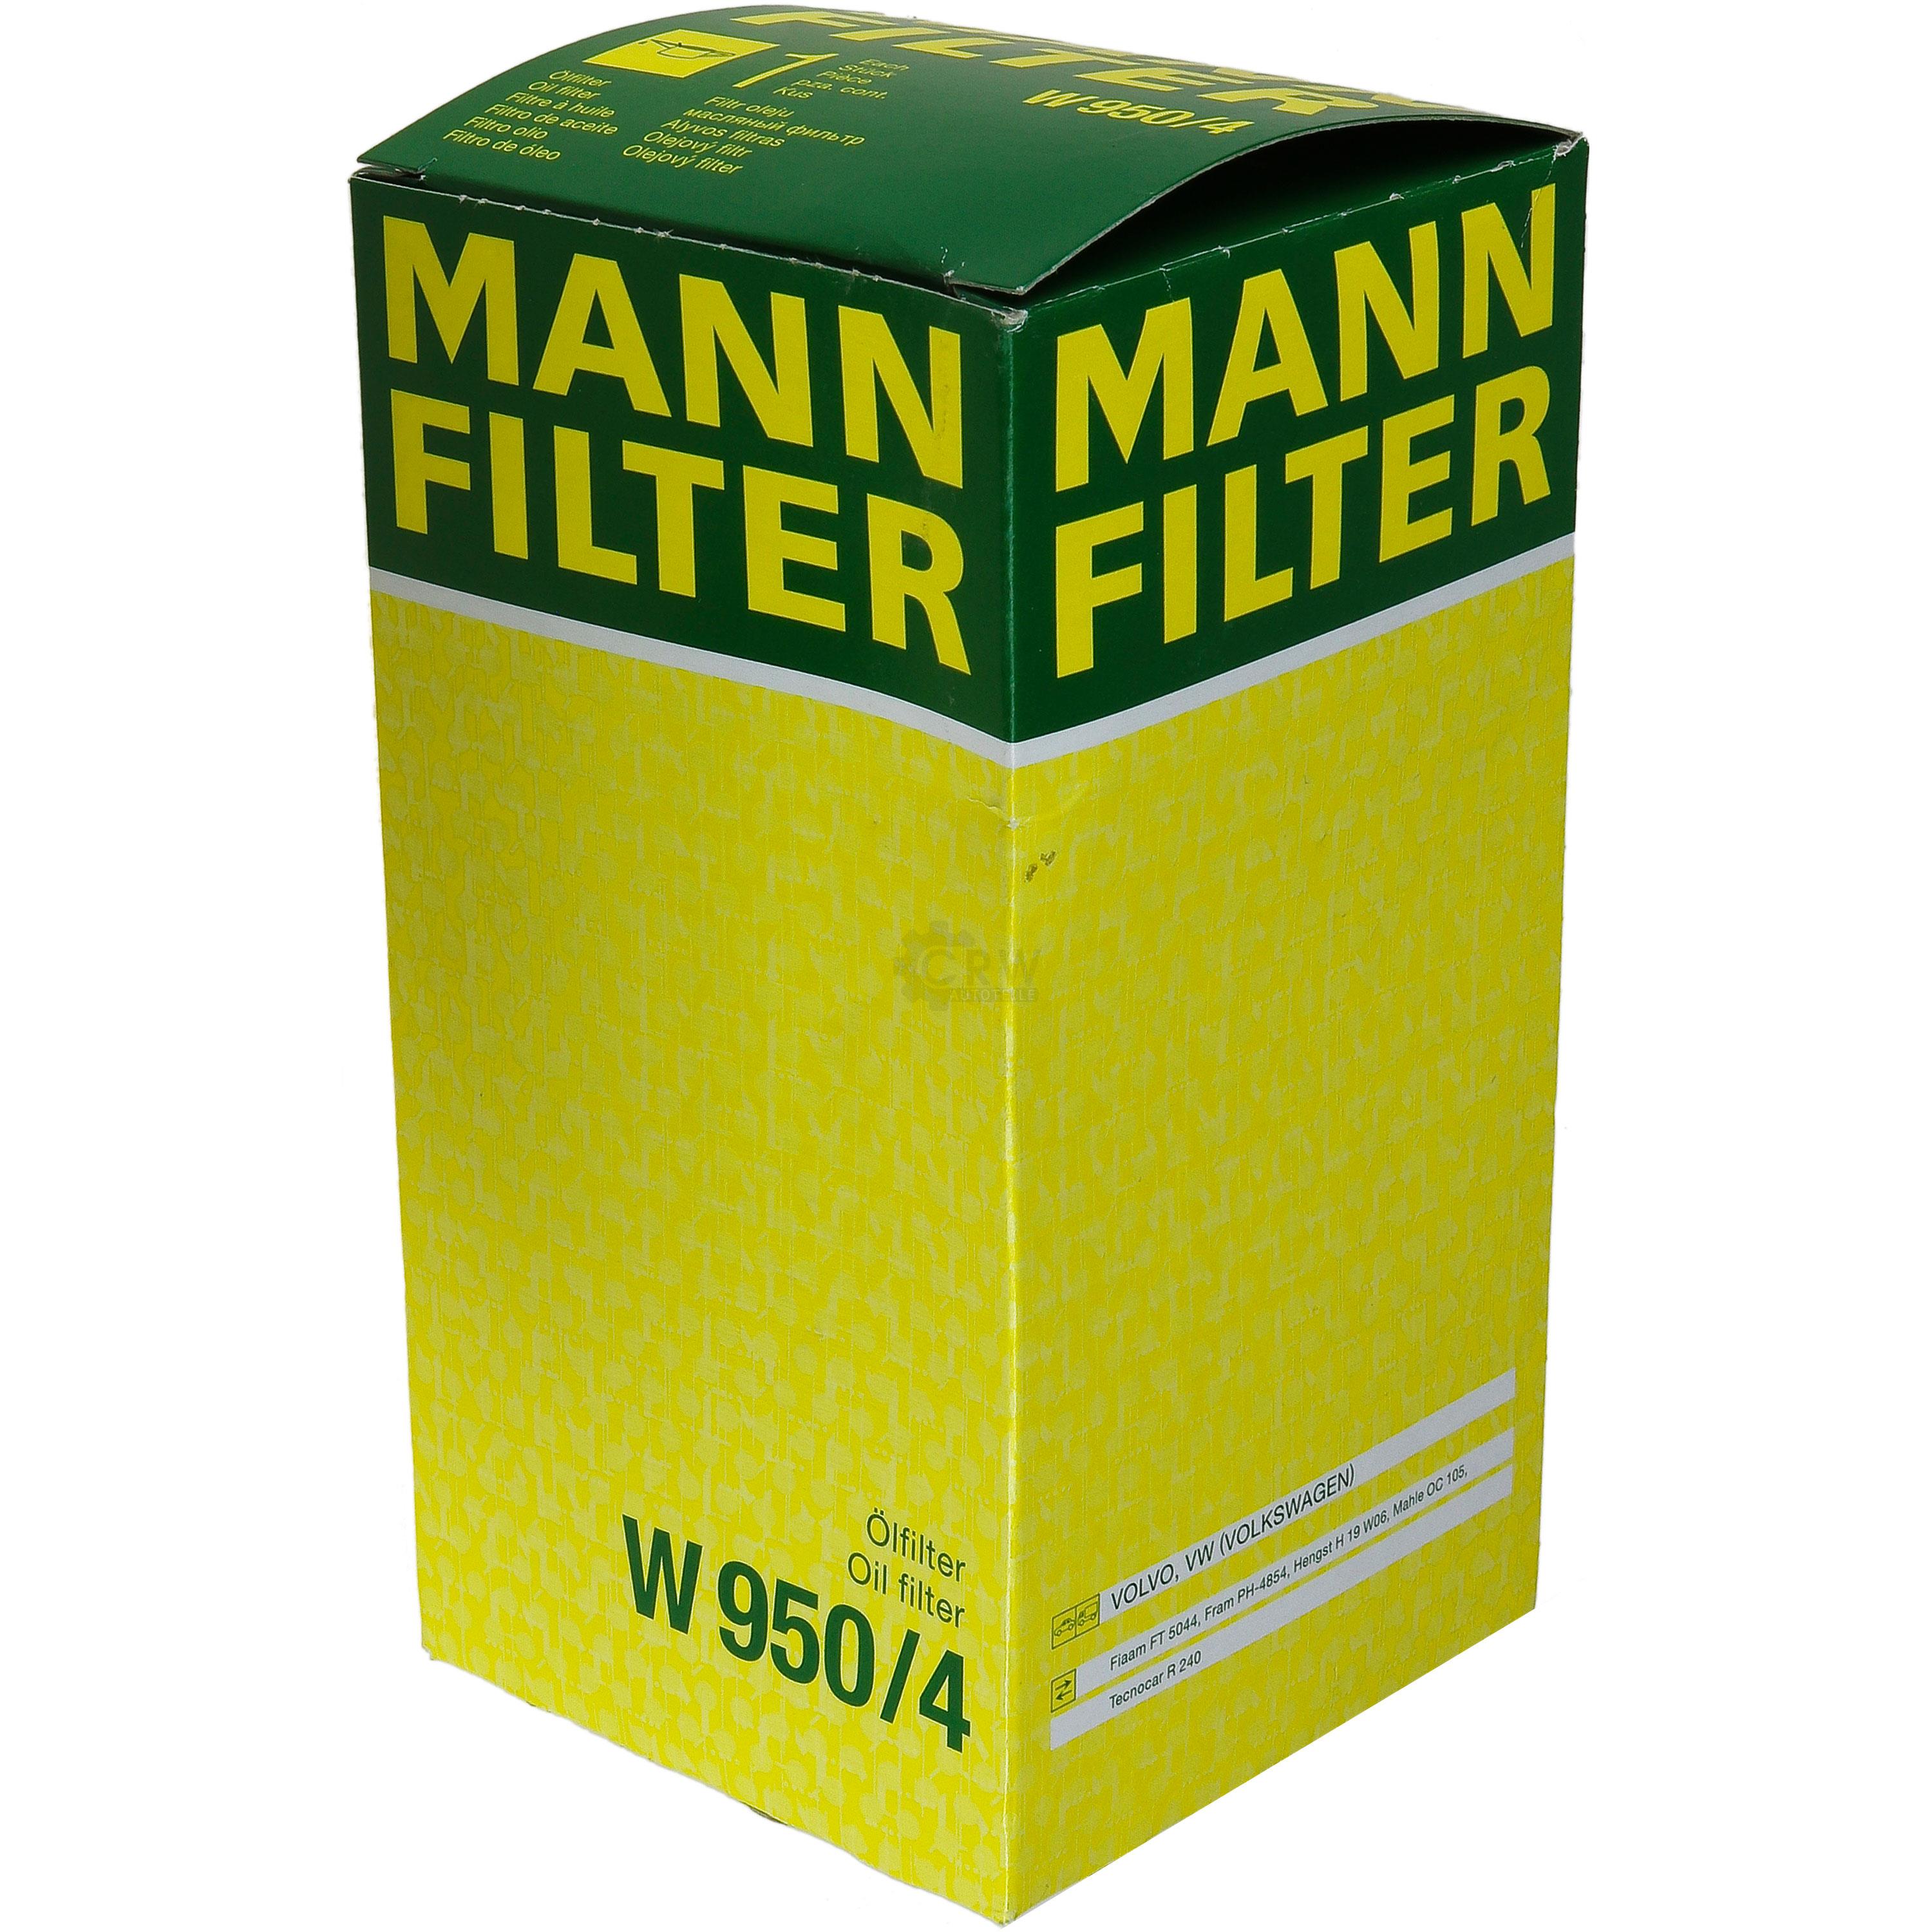 MANN-FILTER Ölfilter W 950/4 Oil Filter